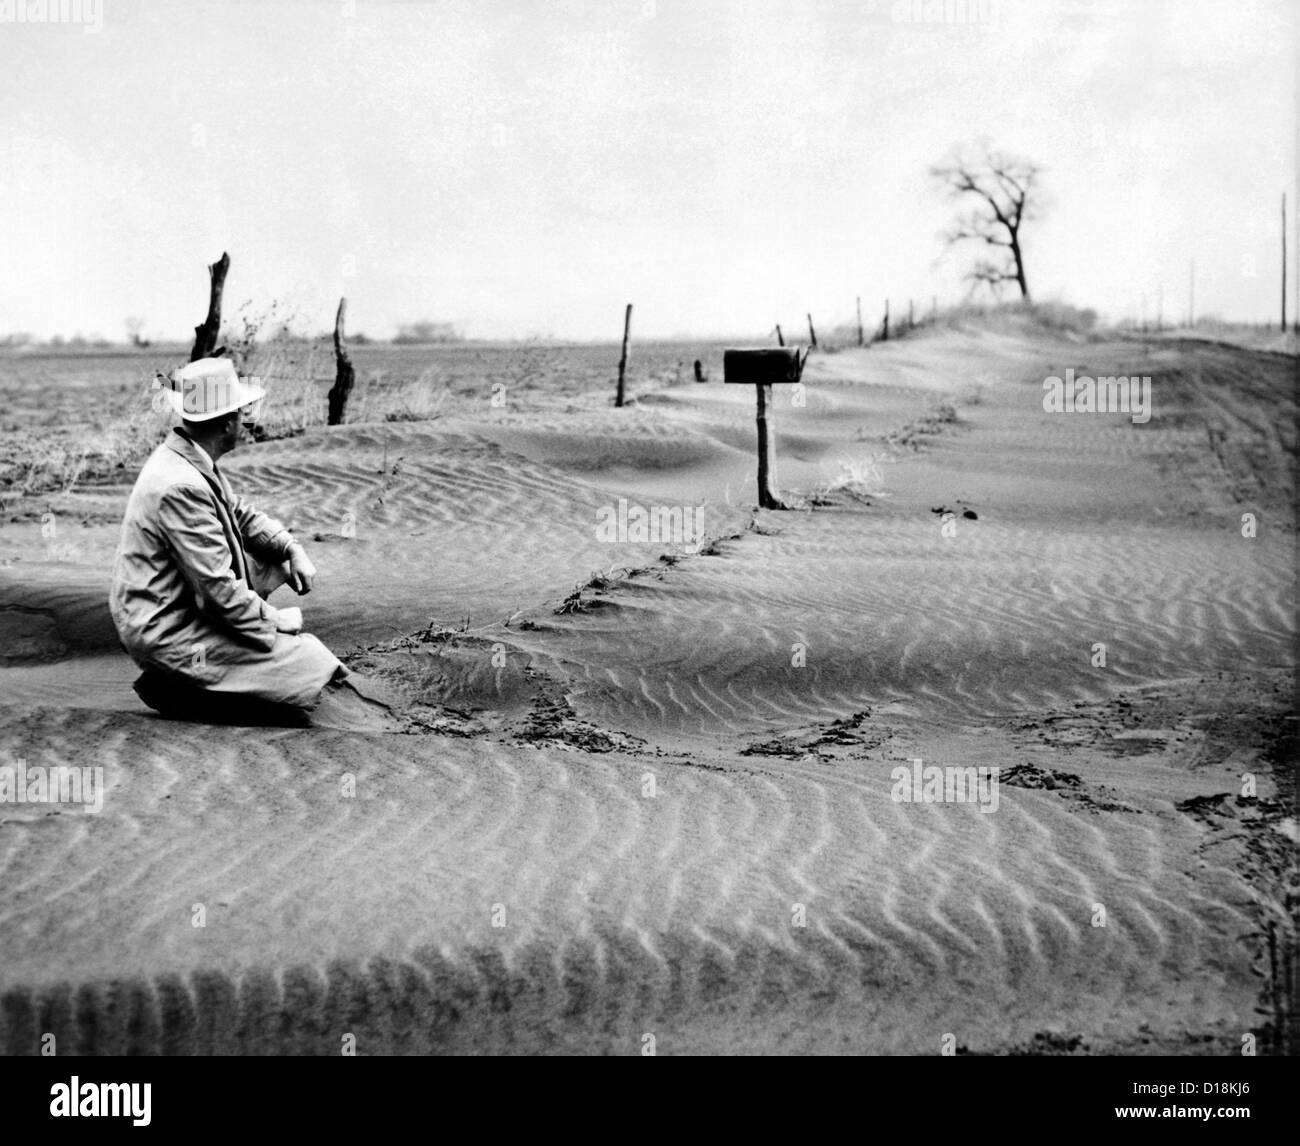 La mi-agriculteur de l'ouest assis dans les dunes de sable le long d'une route de campagne. 1953 Septembre.   ALPHA (CSU) 1589 Archives CSU/Everett Collection Banque D'Images